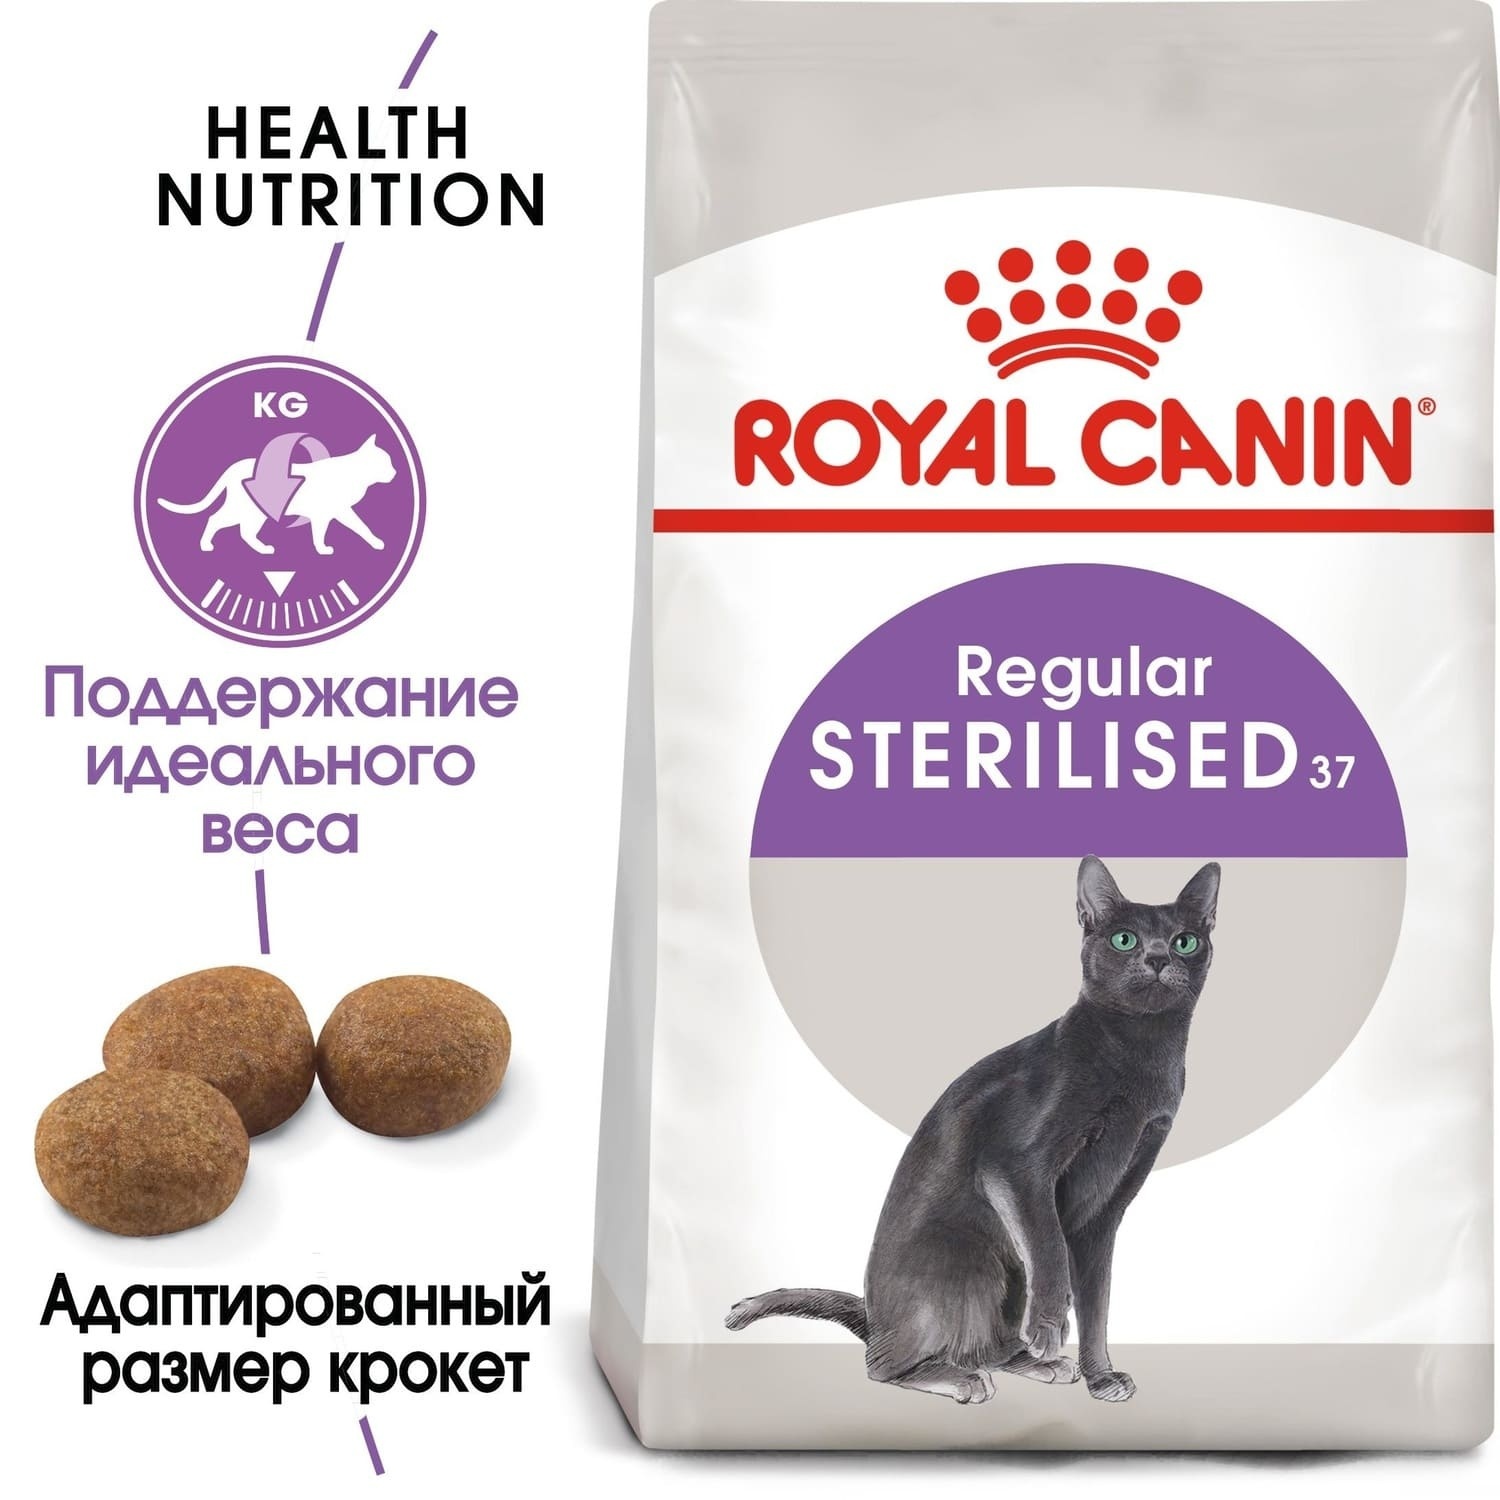 Для кастрированных кошек и котов: 1-7 лет (4 кг) Royal Canin (сухие корма) Для кастрированных кошек и котов: 1-7 лет (4 кг) - фото 2